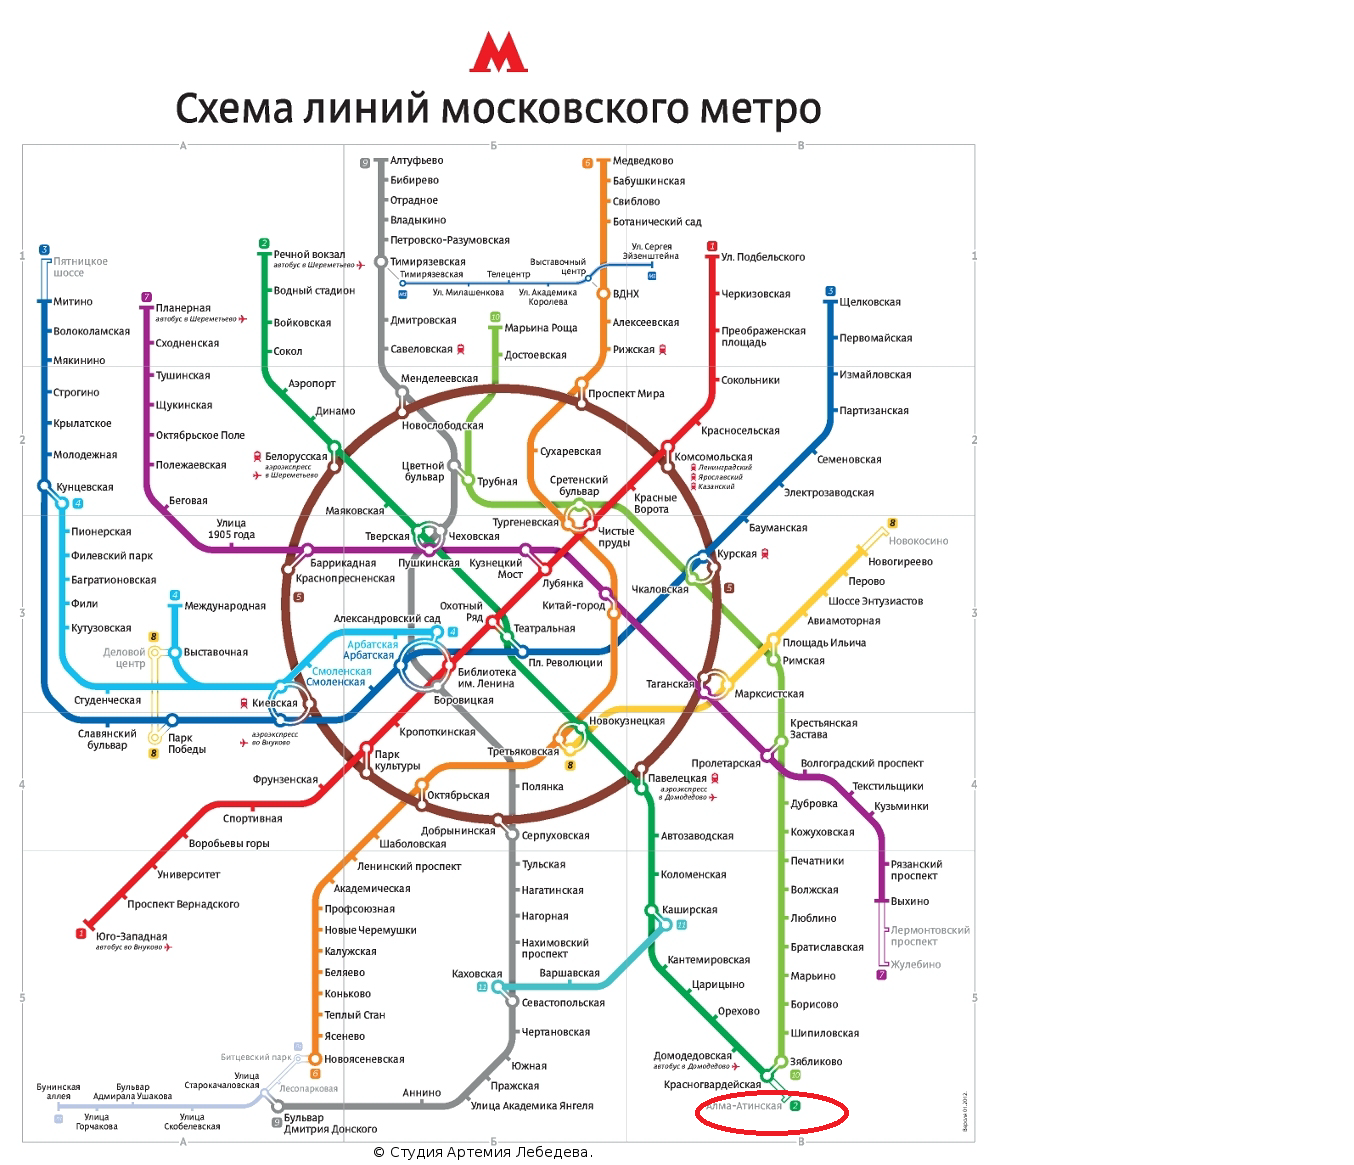 метро калужская на карте метро